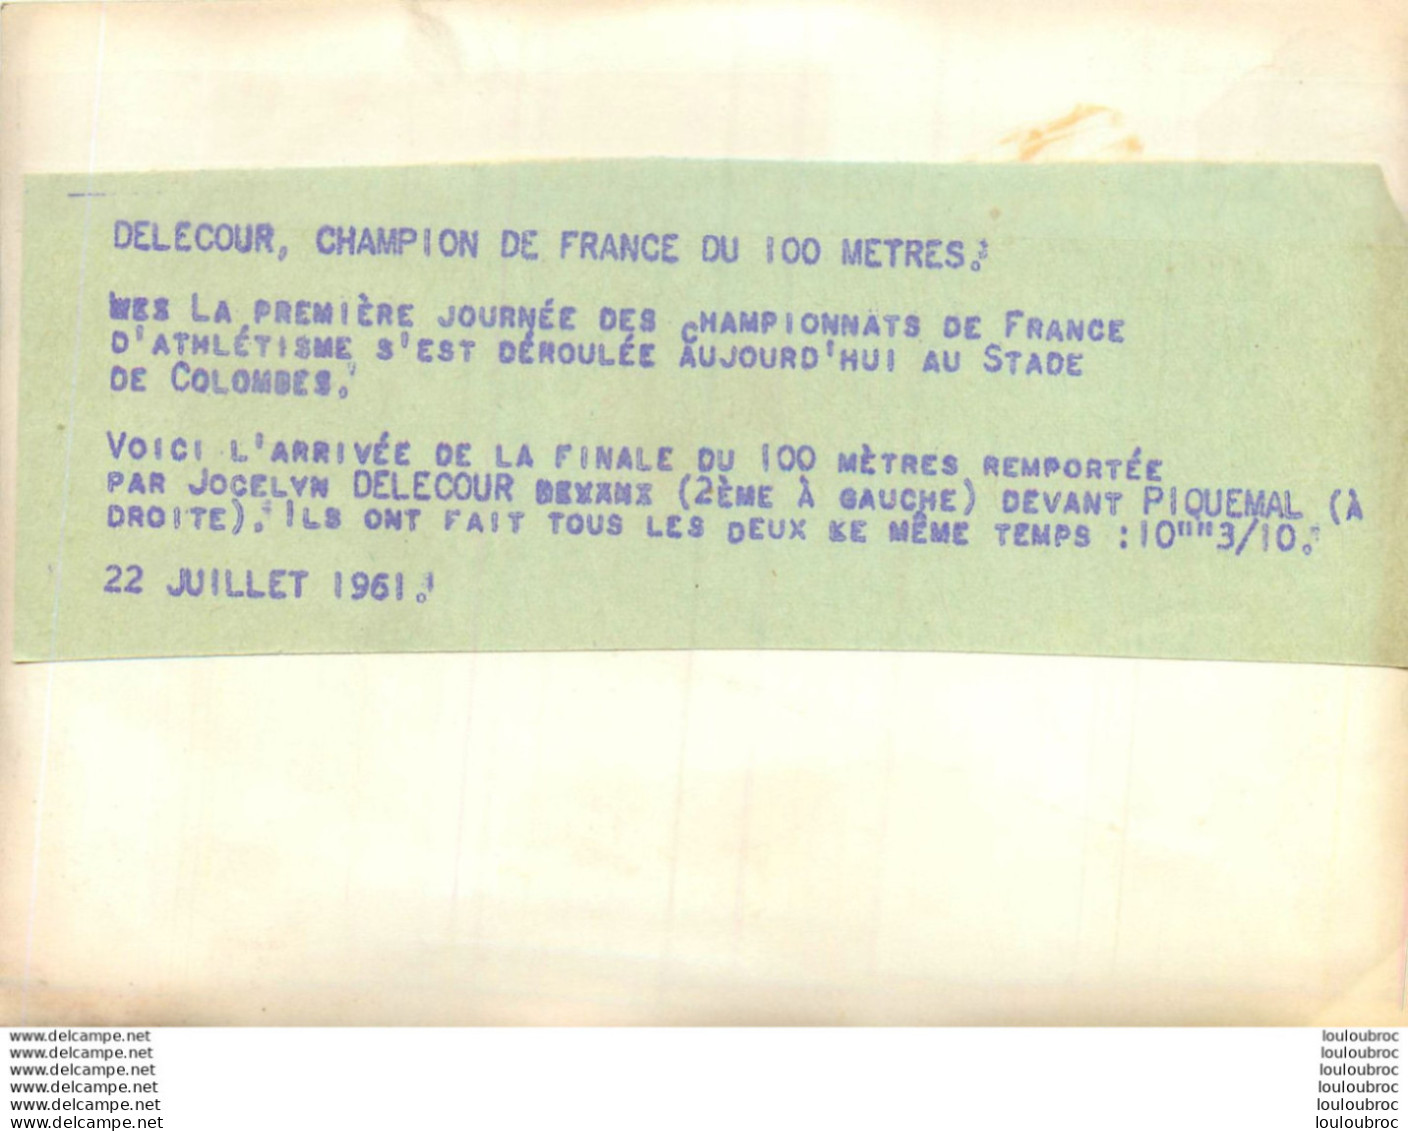 ATHLETISME 07/1961 STADE DE COLOMBES DELECOUR GAGNE LE 100 METRES DEVANT PIQUEMAL PHOTO DE PRESSE 18 X 13 CM - Sports